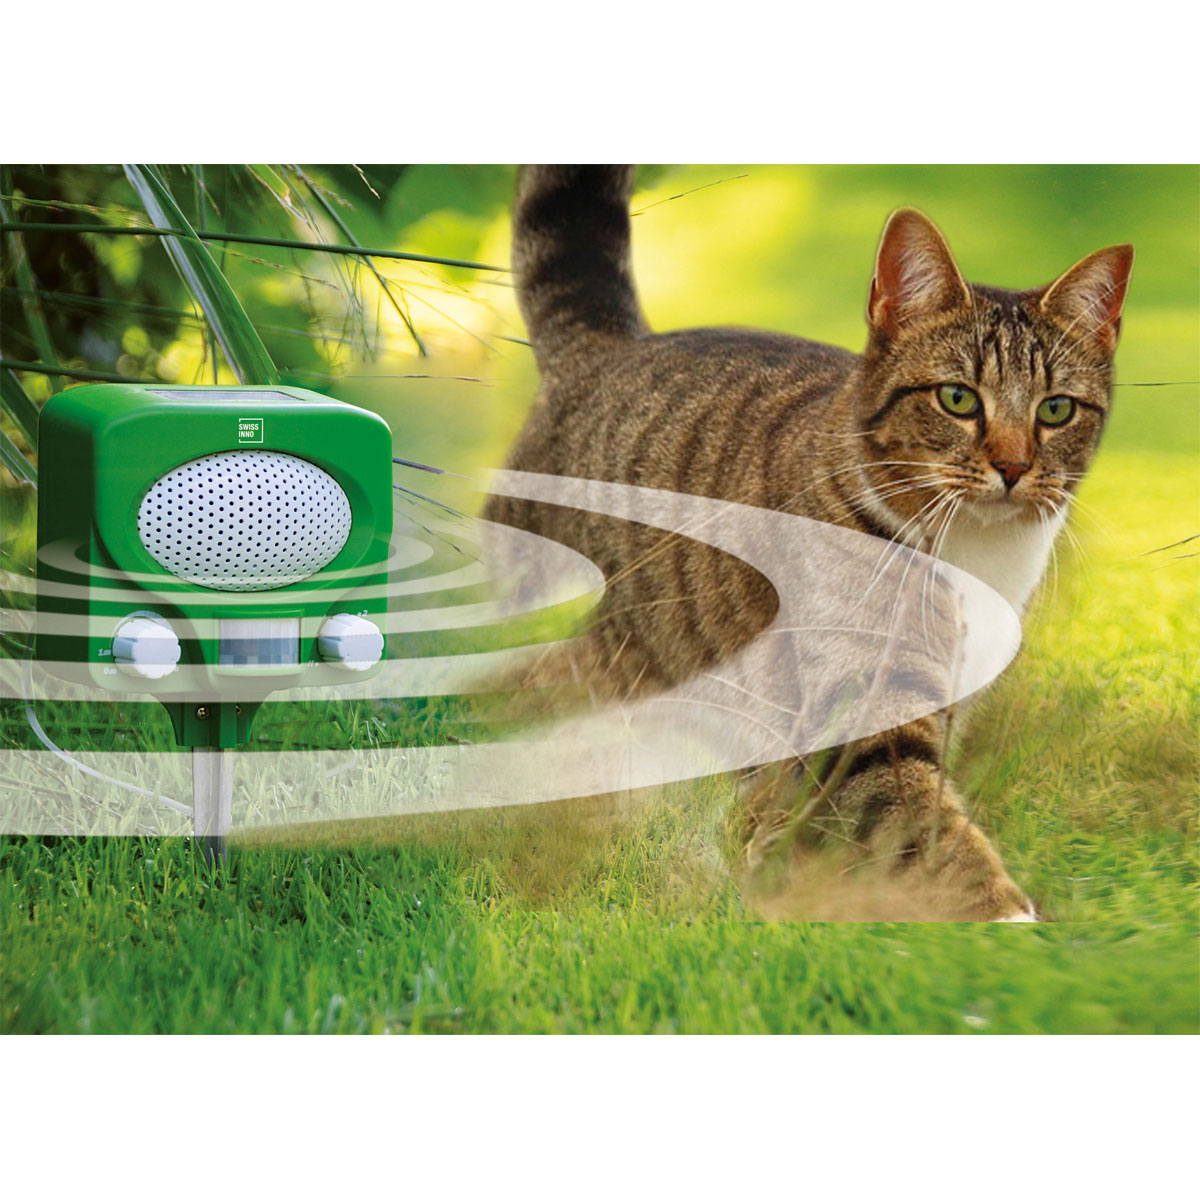 Aicharynic Tiervertreiber Garden Katzenschreck mit Batteriebetrieben und Wasserdichte Blitz 5 Modus Einstellbar Ultraschall Abwehr Tierabwehr für Katzen Hunde Katzenschreck Ultraschall Solar 